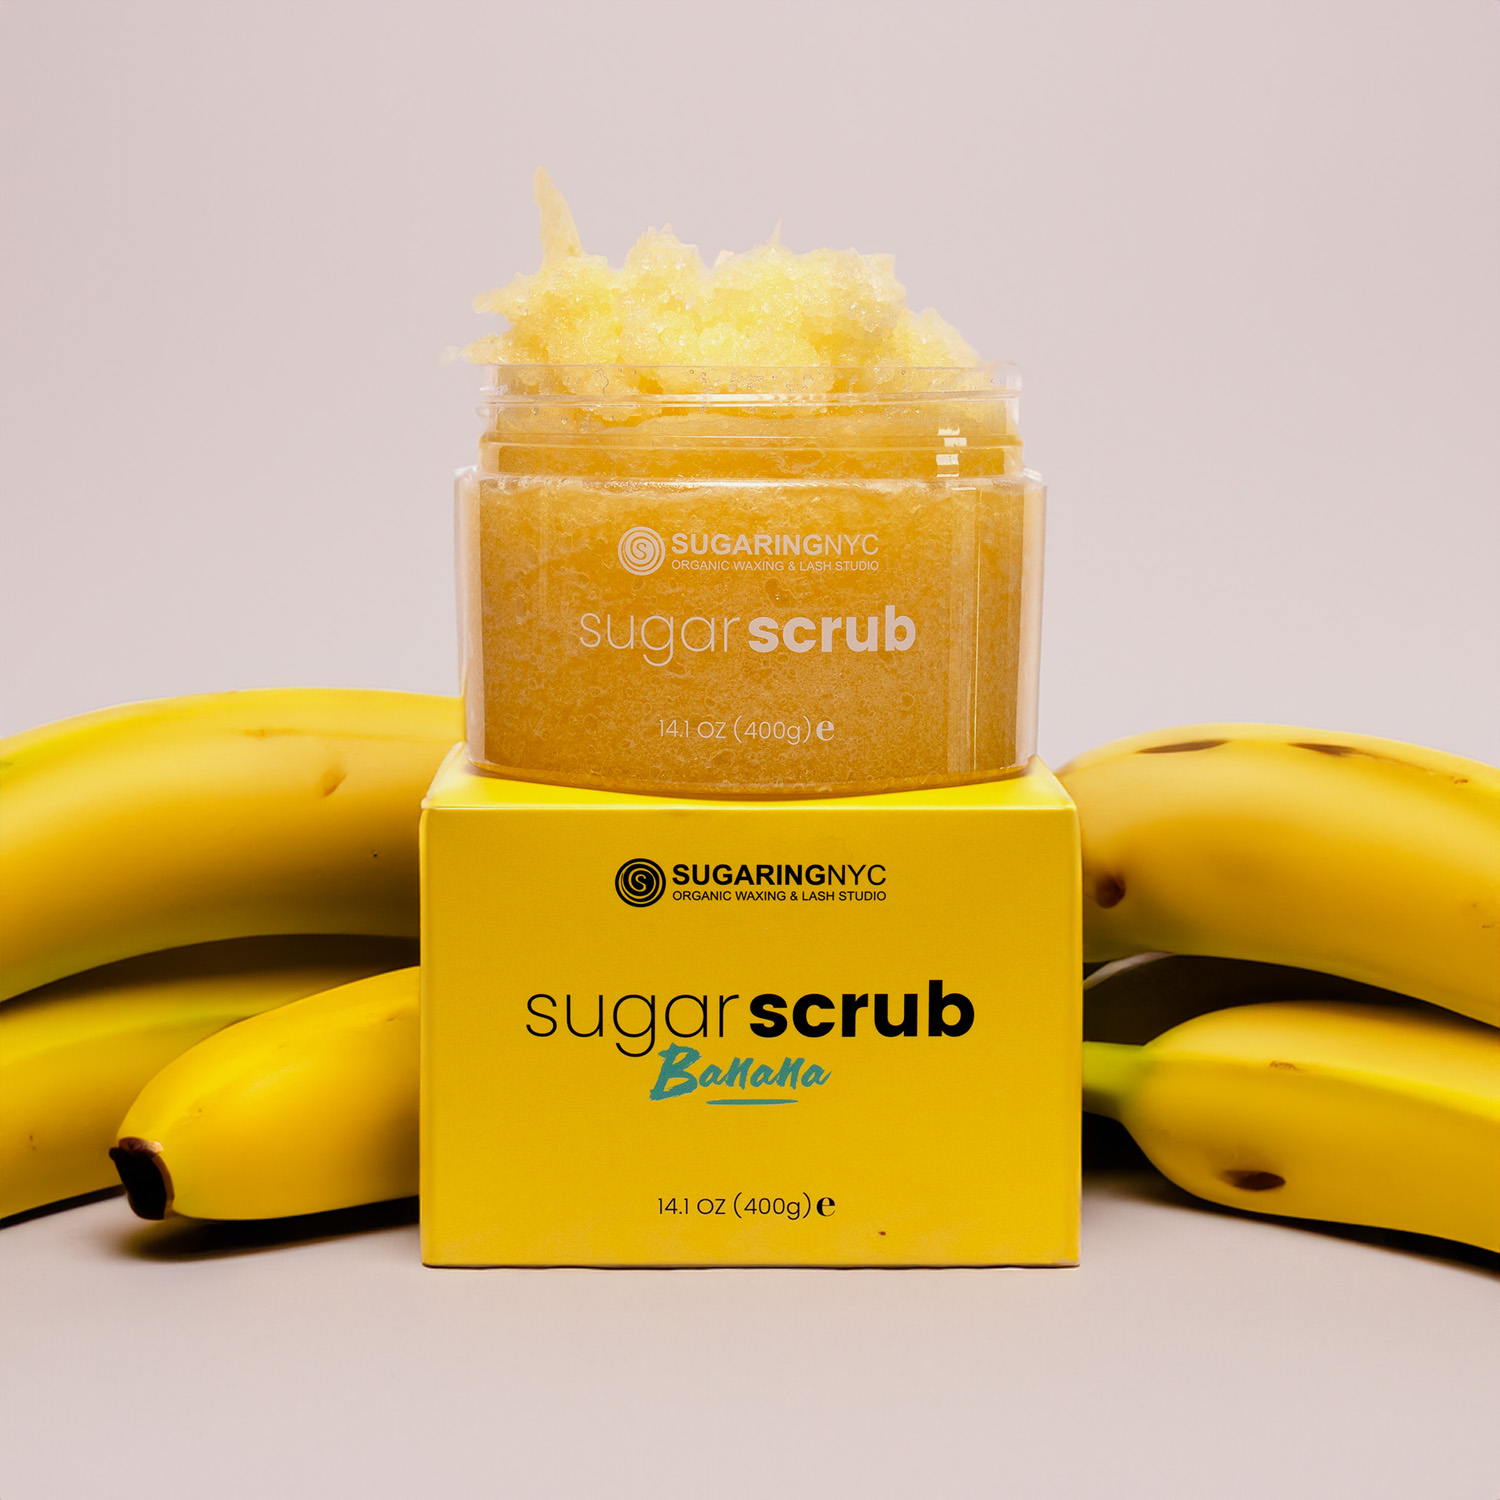 Sugaring NYC Signature Sugar Scrub – Going Bananas